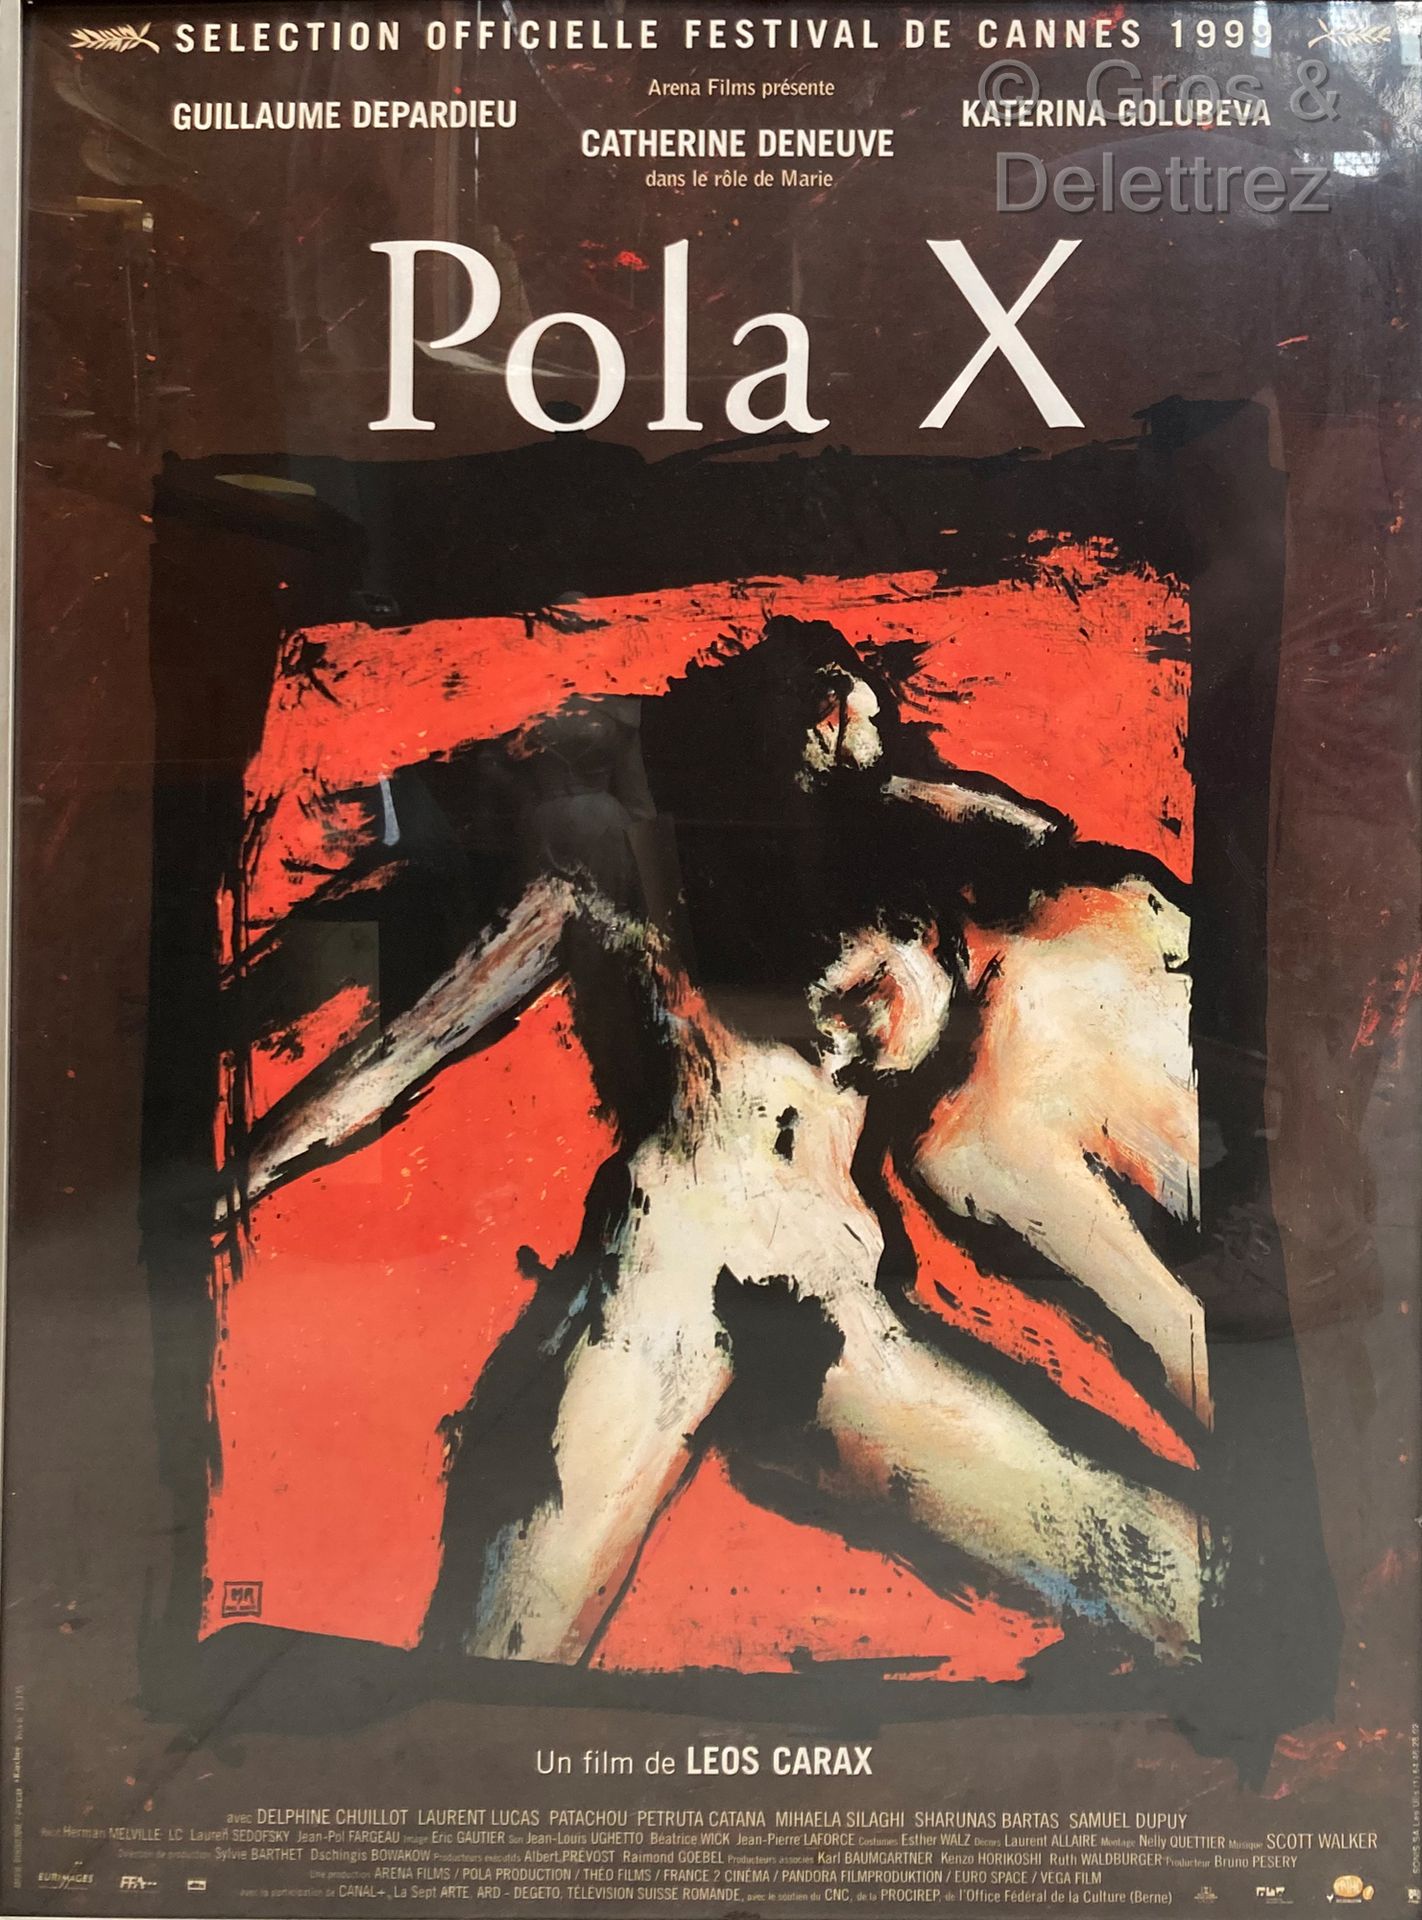 Leos Carax POLA X

Affiche de cinéma

79 x 59 cm sous verre